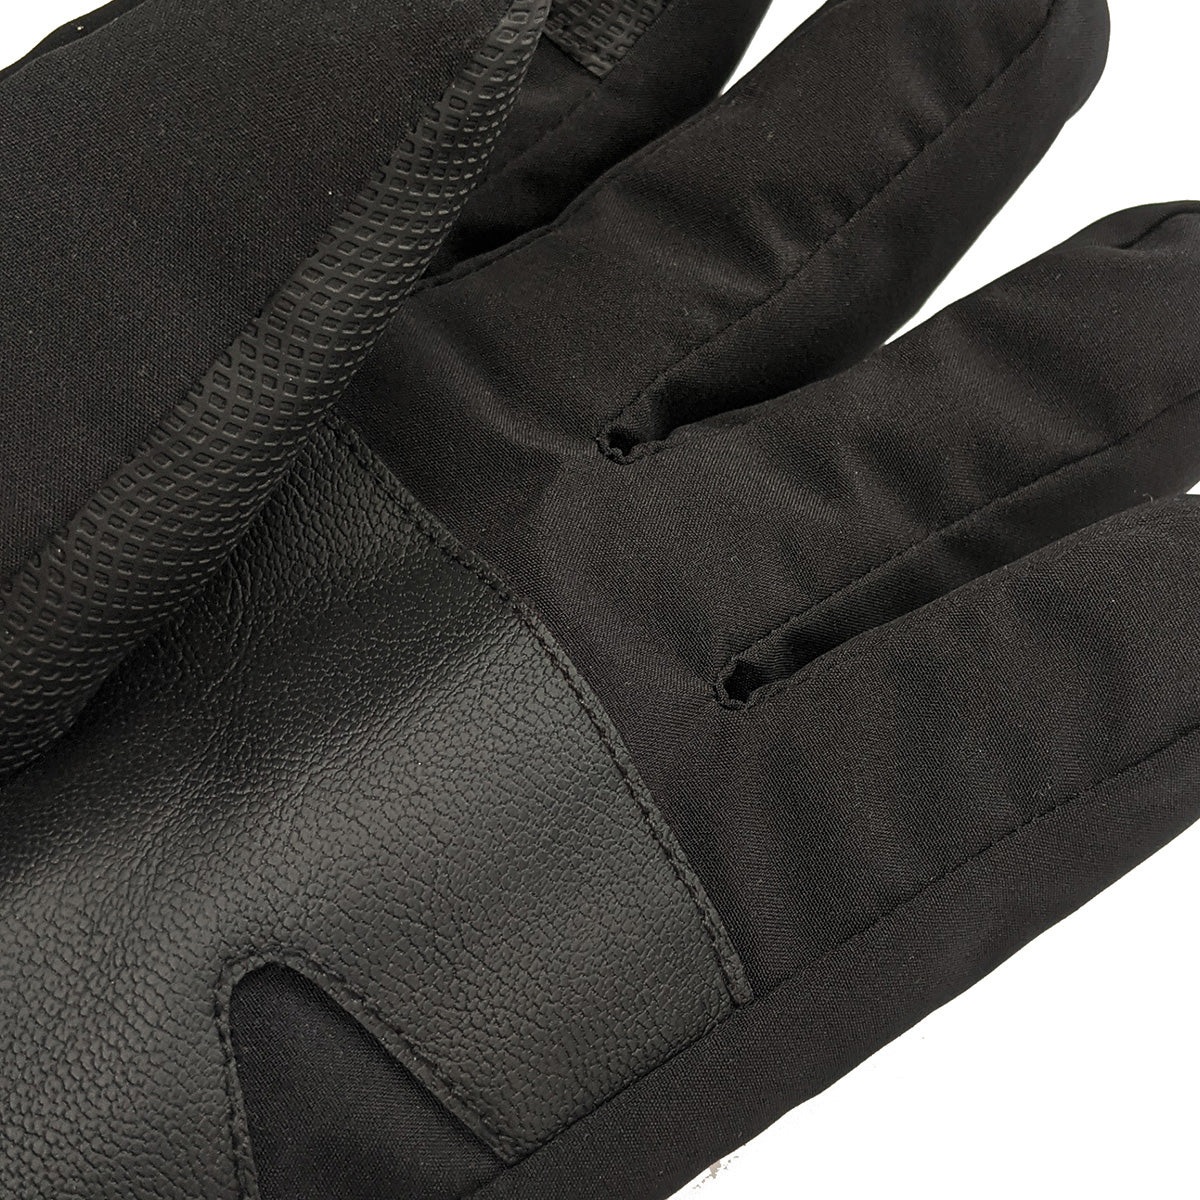 ΓΑΝΤΙΑ CTR PLUS SKI Glove Waterproof *UNISEX*Outdoor* 001510